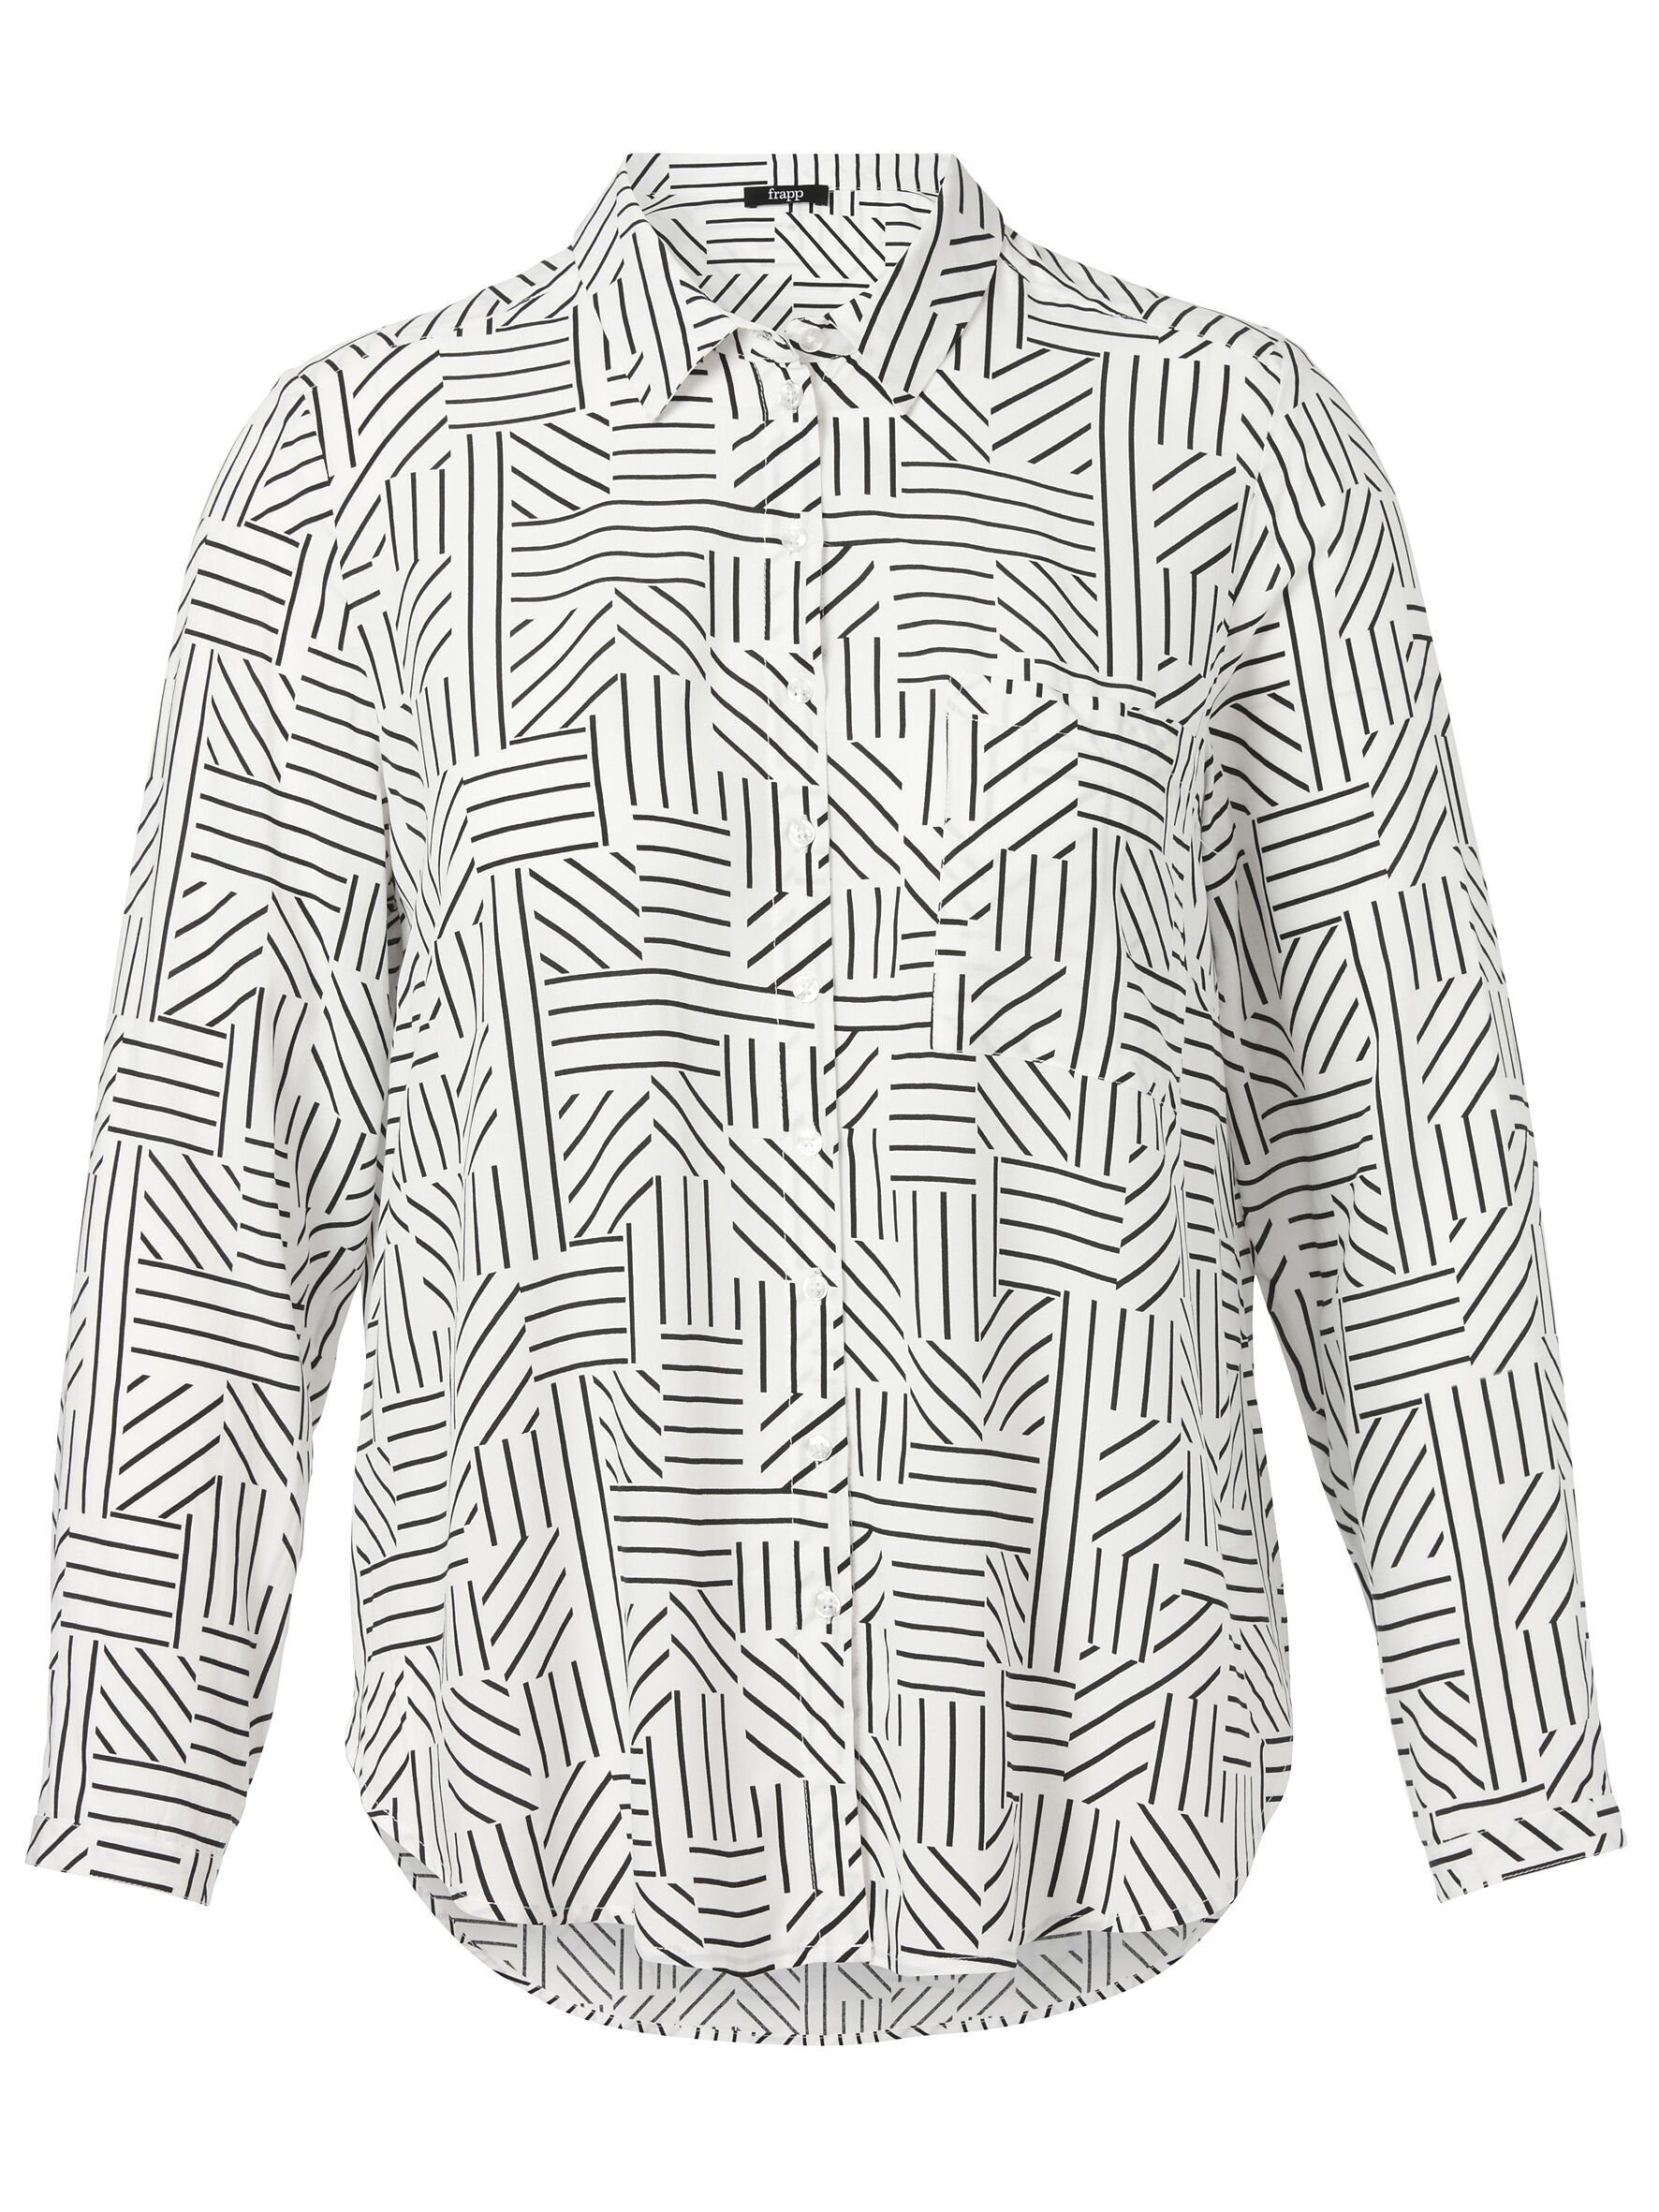 FRAPP Klassische Bluse mit grafischem Allover-Muster